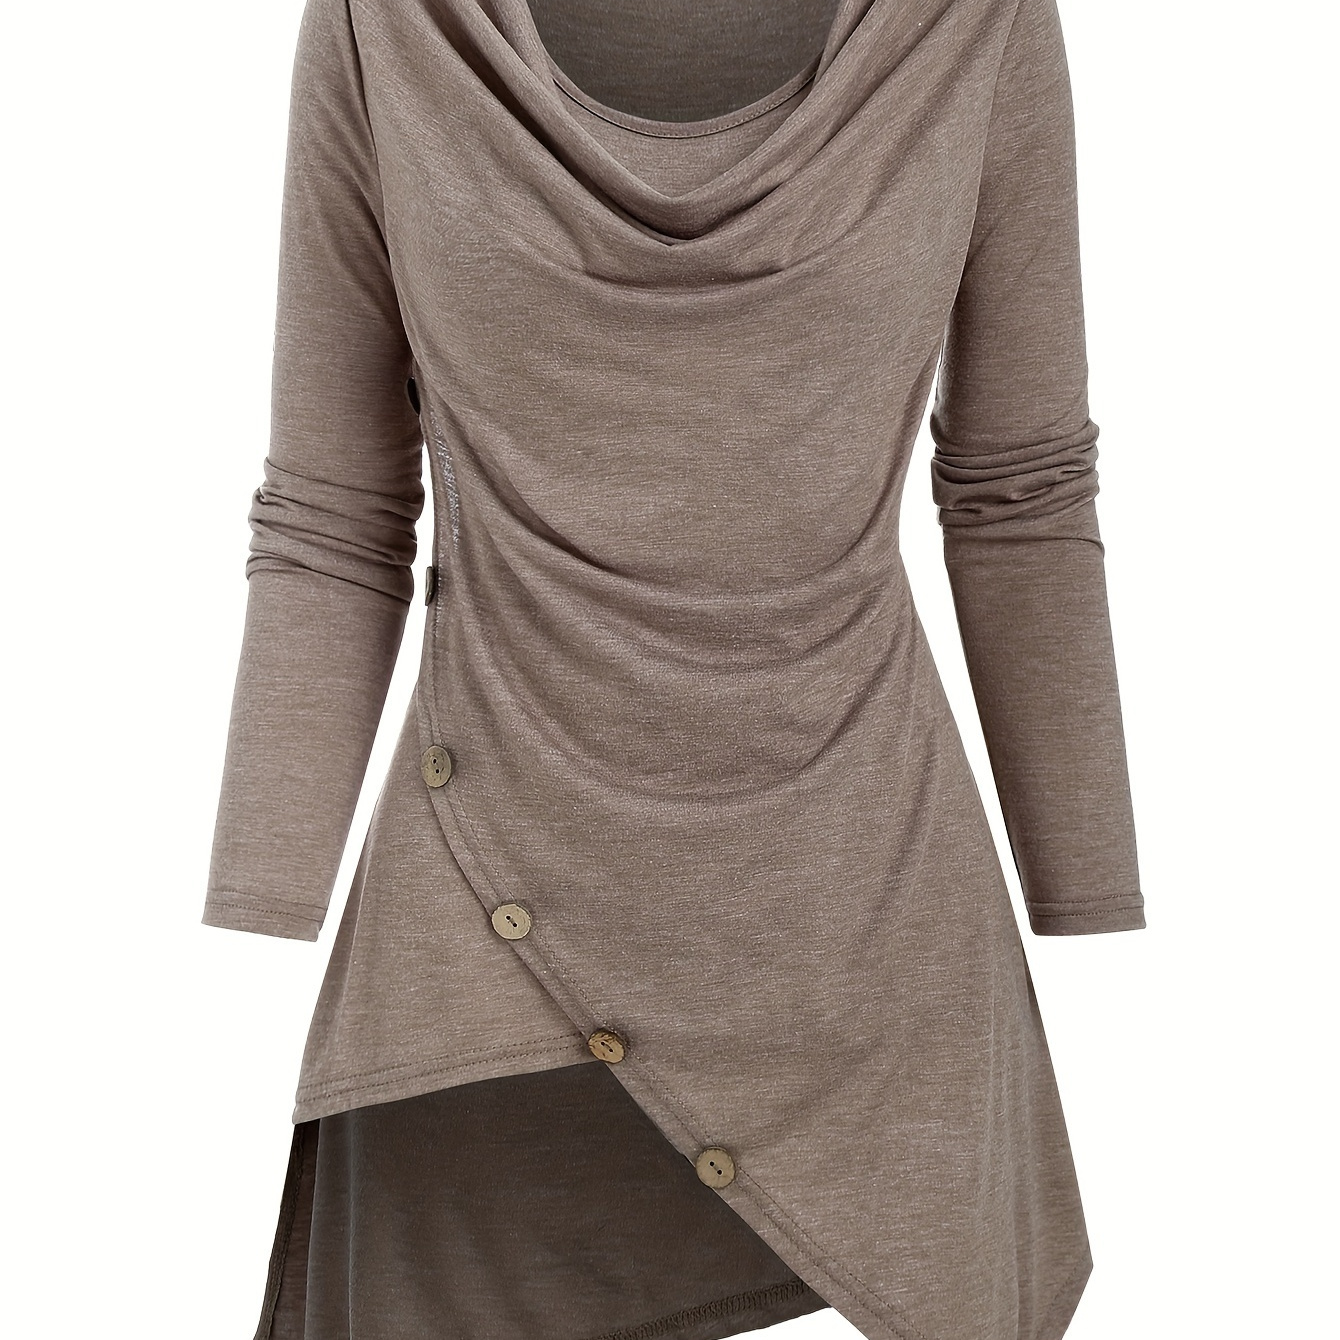 

Cowl Neck Button Decor Top, Versatile Asymmetrical Hem Top For Spring & Fall, Women's Clothing